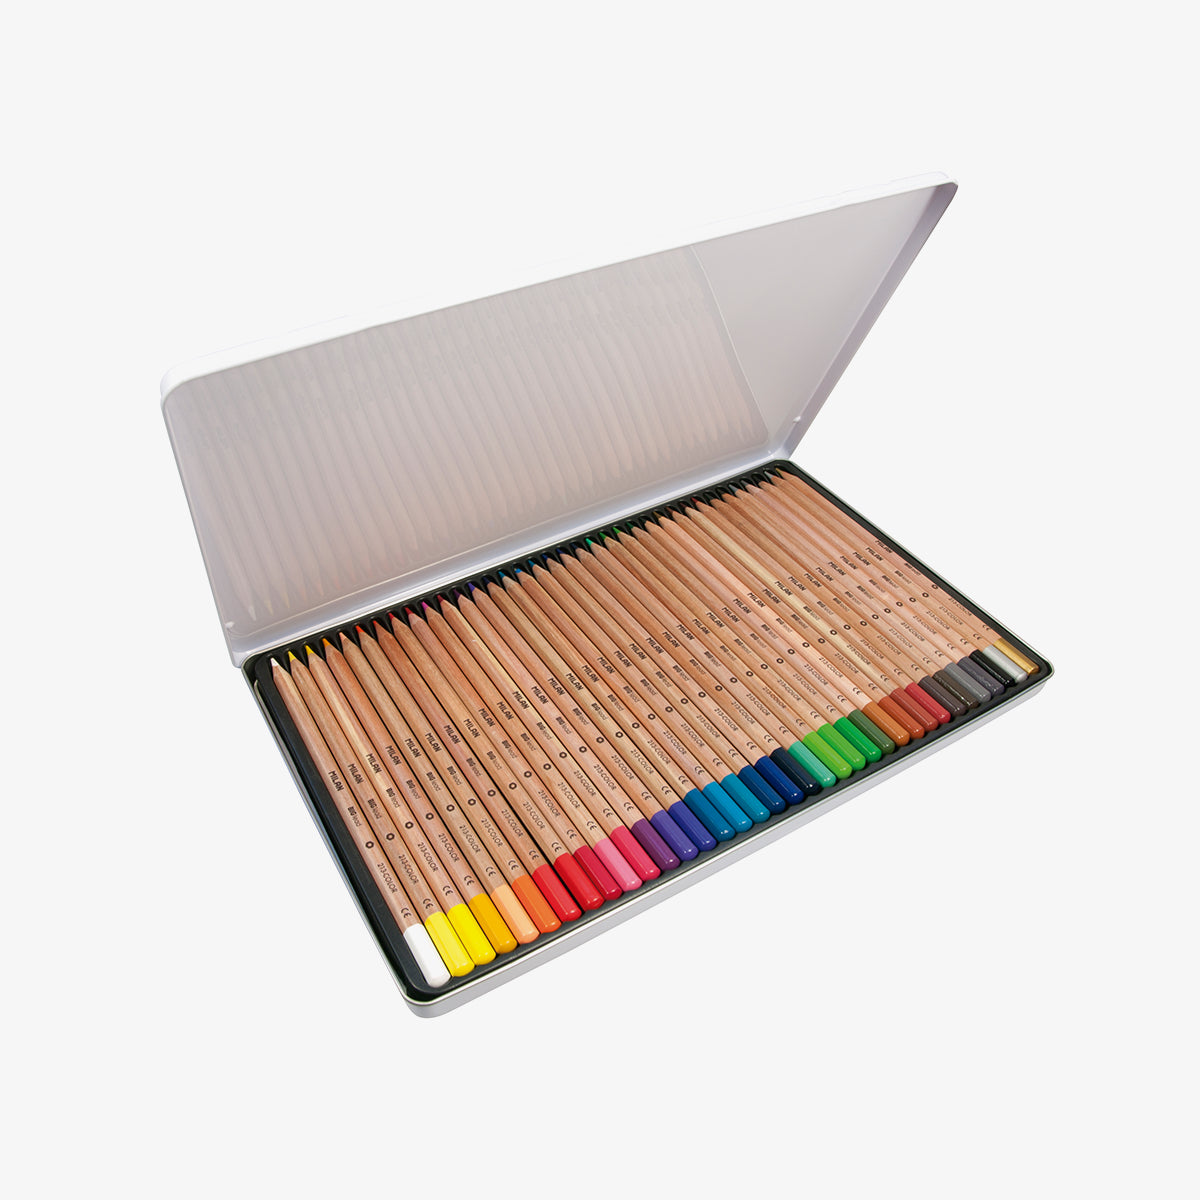 36 llapis de colors de mina gruixuda (3,5 mm) en capsa metàl·lica